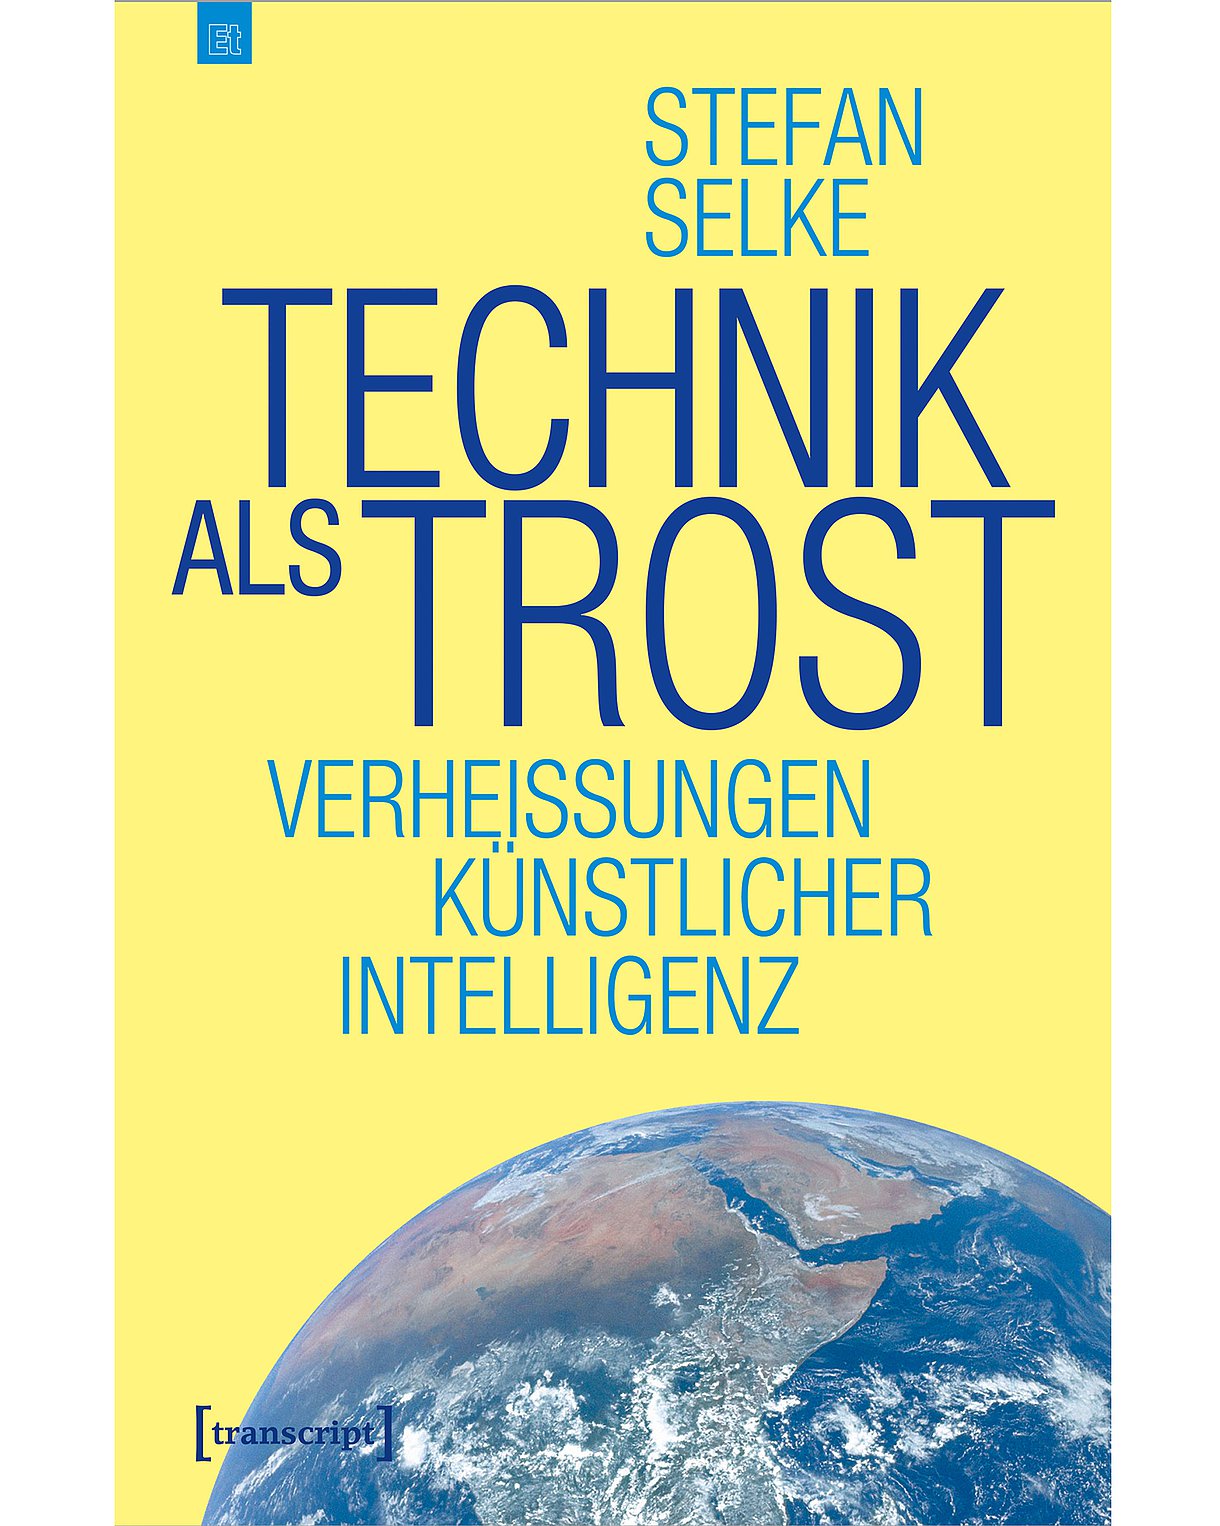 Cover des Buches "Technik als Trost" mit der Abbildung der Erdkugel vor gelbem Hintergrund